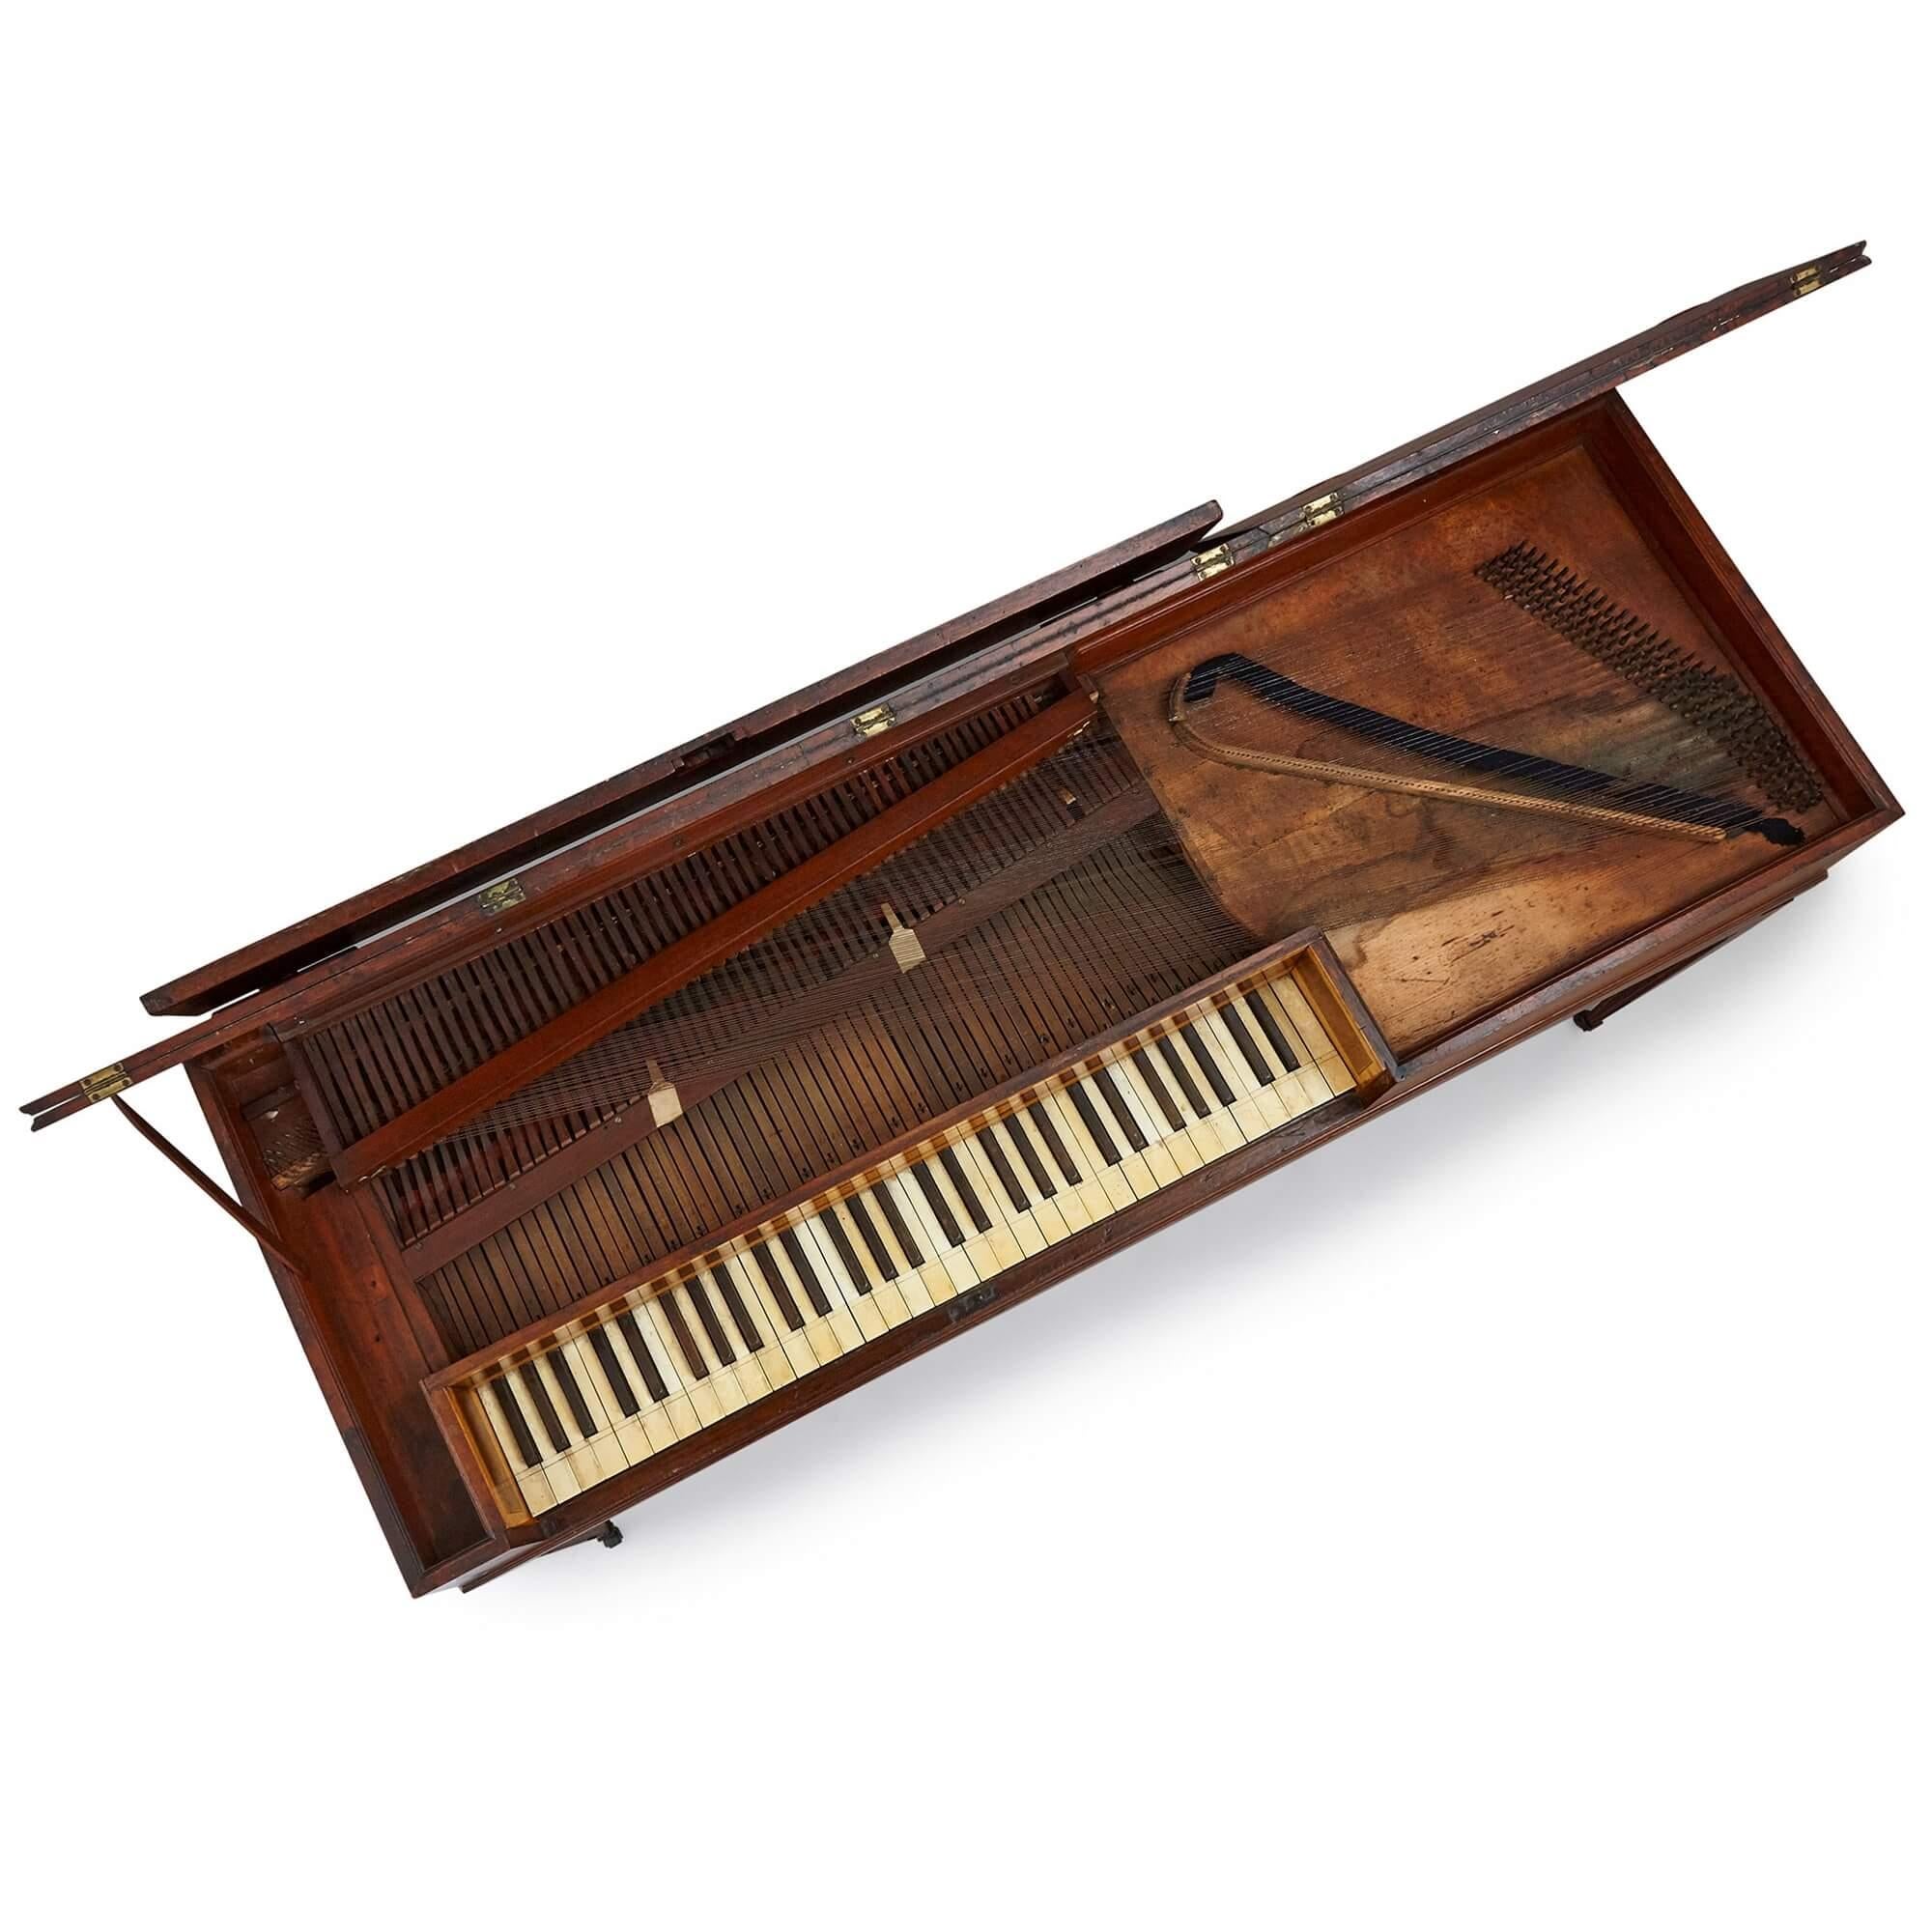 Antikes Tafelklavier von Beck aus der Zeit von George III
Englisch, 1788
Höhe 81cm, Breite 148cm, Tiefe 52cm

Bei diesem eleganten Instrument handelt es sich um ein Tafelklavier, das im achtzehnten Jahrhundert sehr beliebt war. Das Klavier ist aus